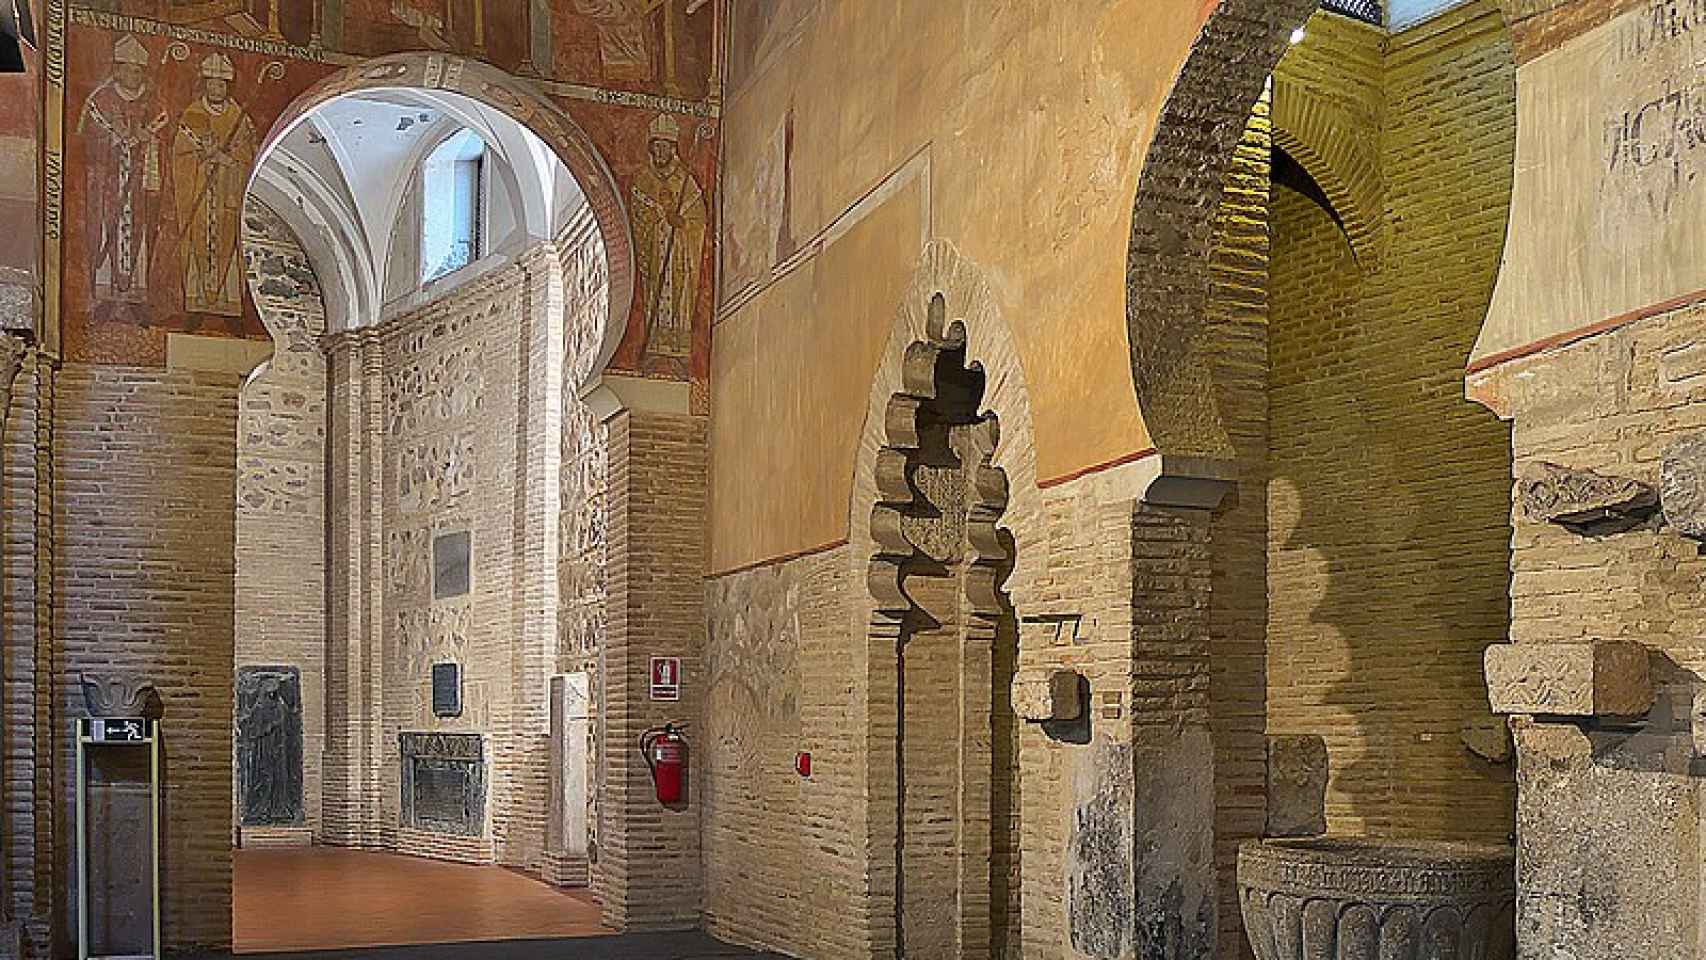 Este es el templo mozárabe más espectacular de España